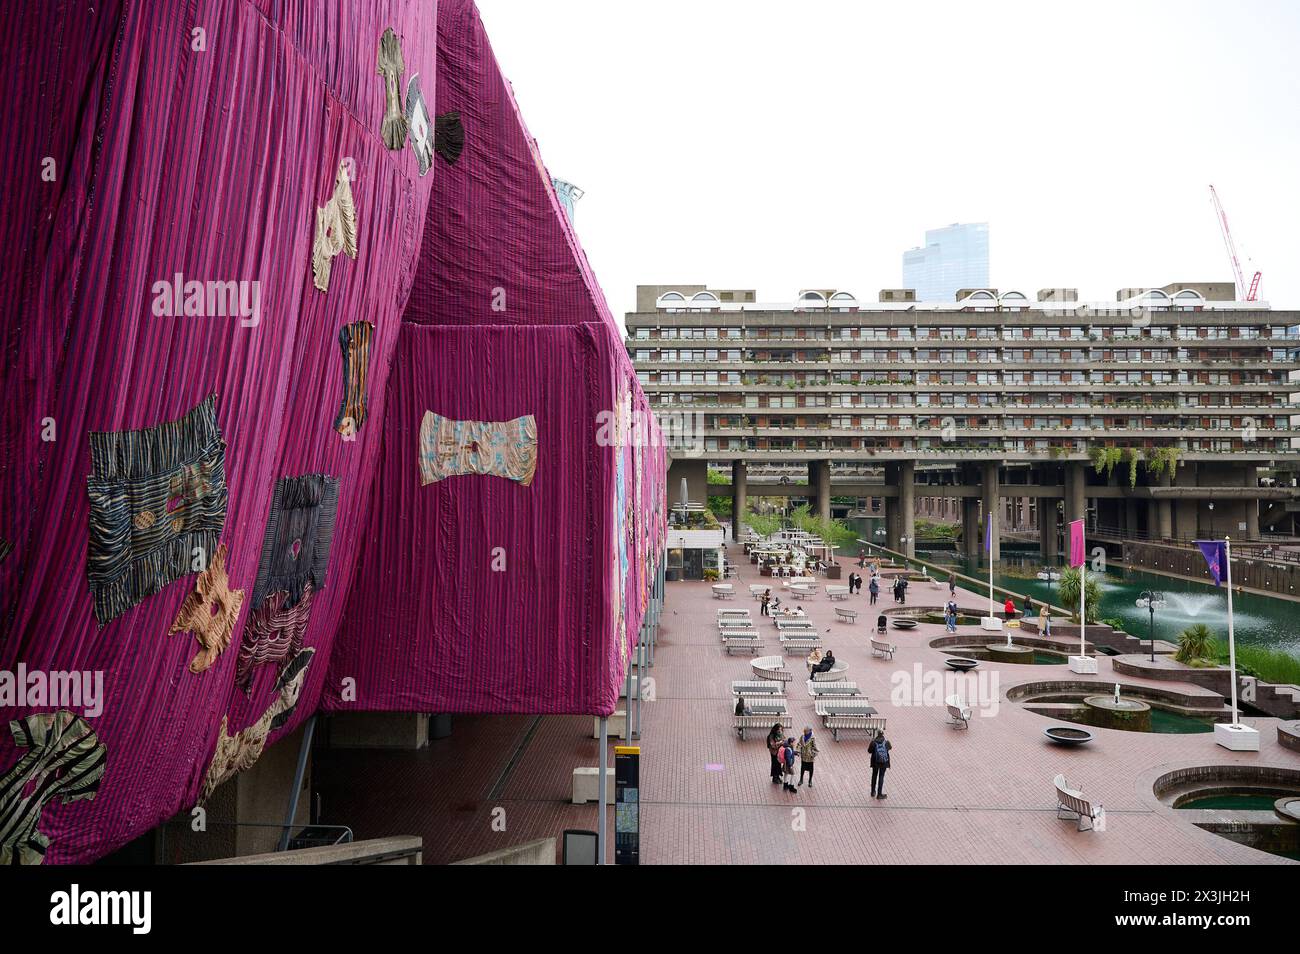 Exposition d'art de tissu textile Ibrahim Mahama 'Purple Hibiscus' à l'extérieur du bâtiment Barbican Centre City of London Banque D'Images